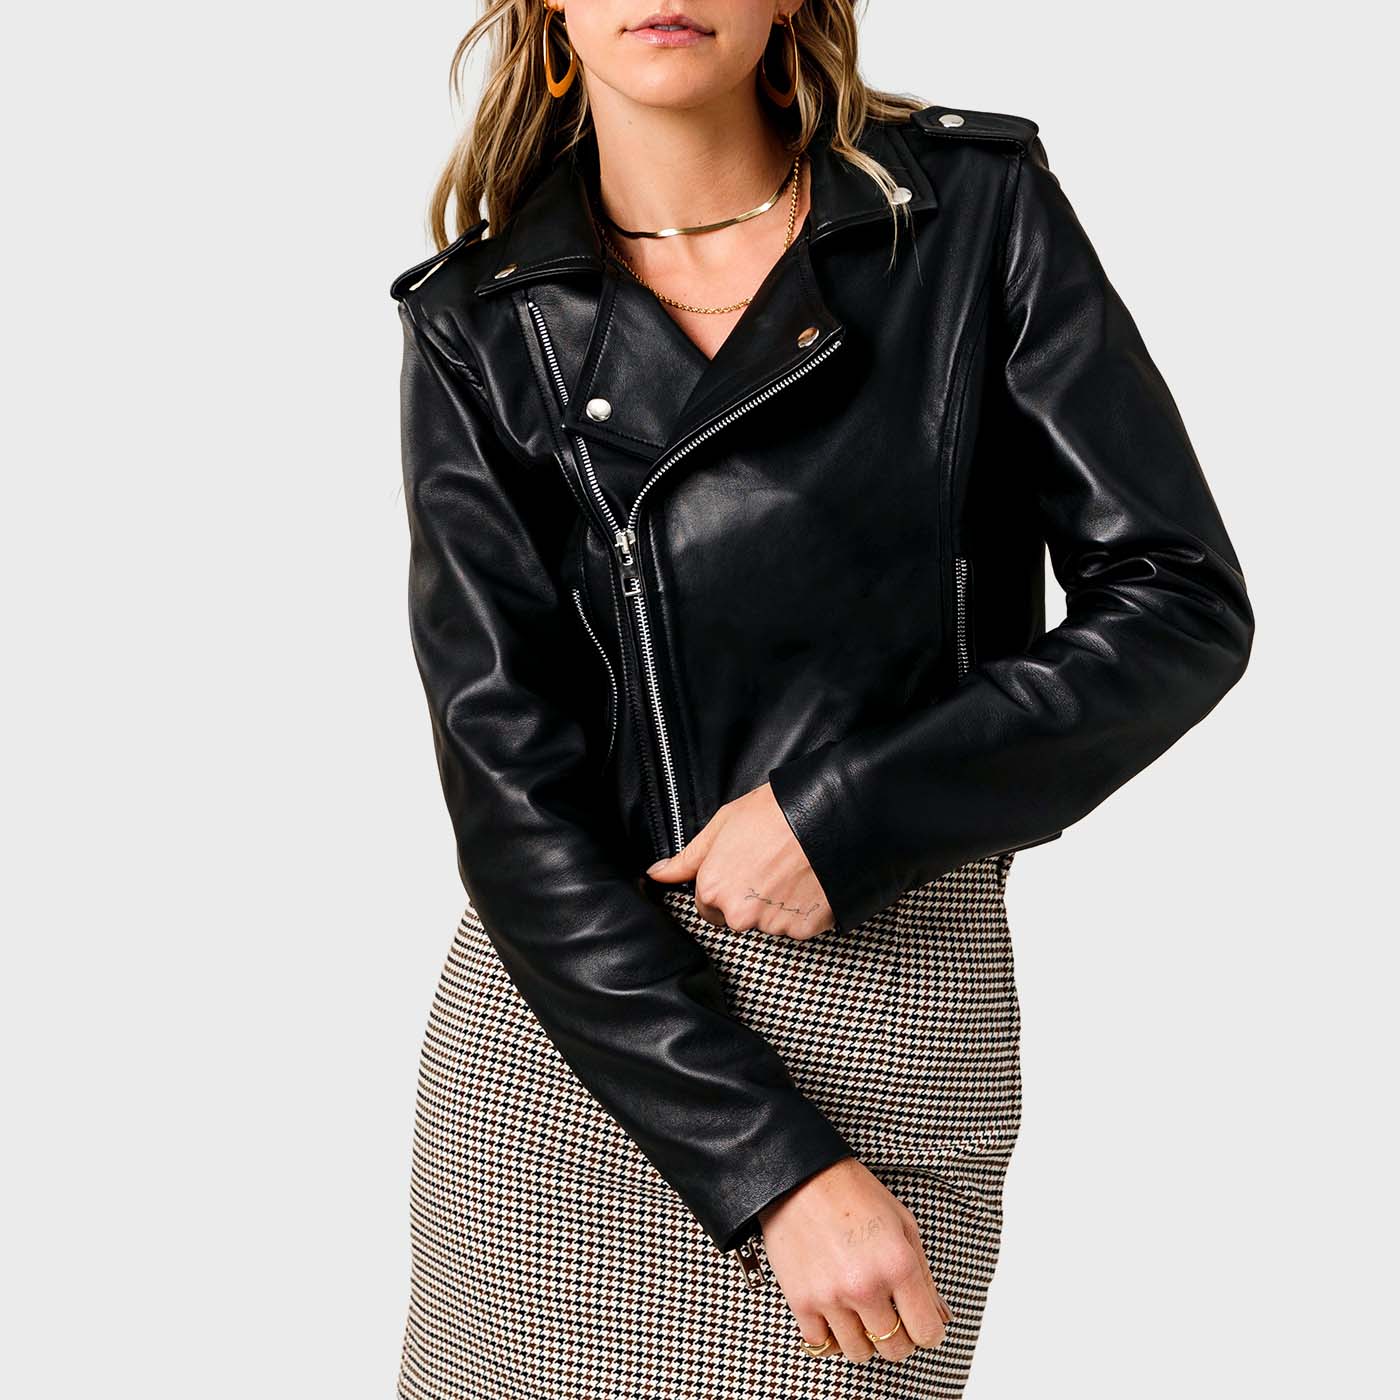 Leather Biker Jacket Black, Women's Jackets